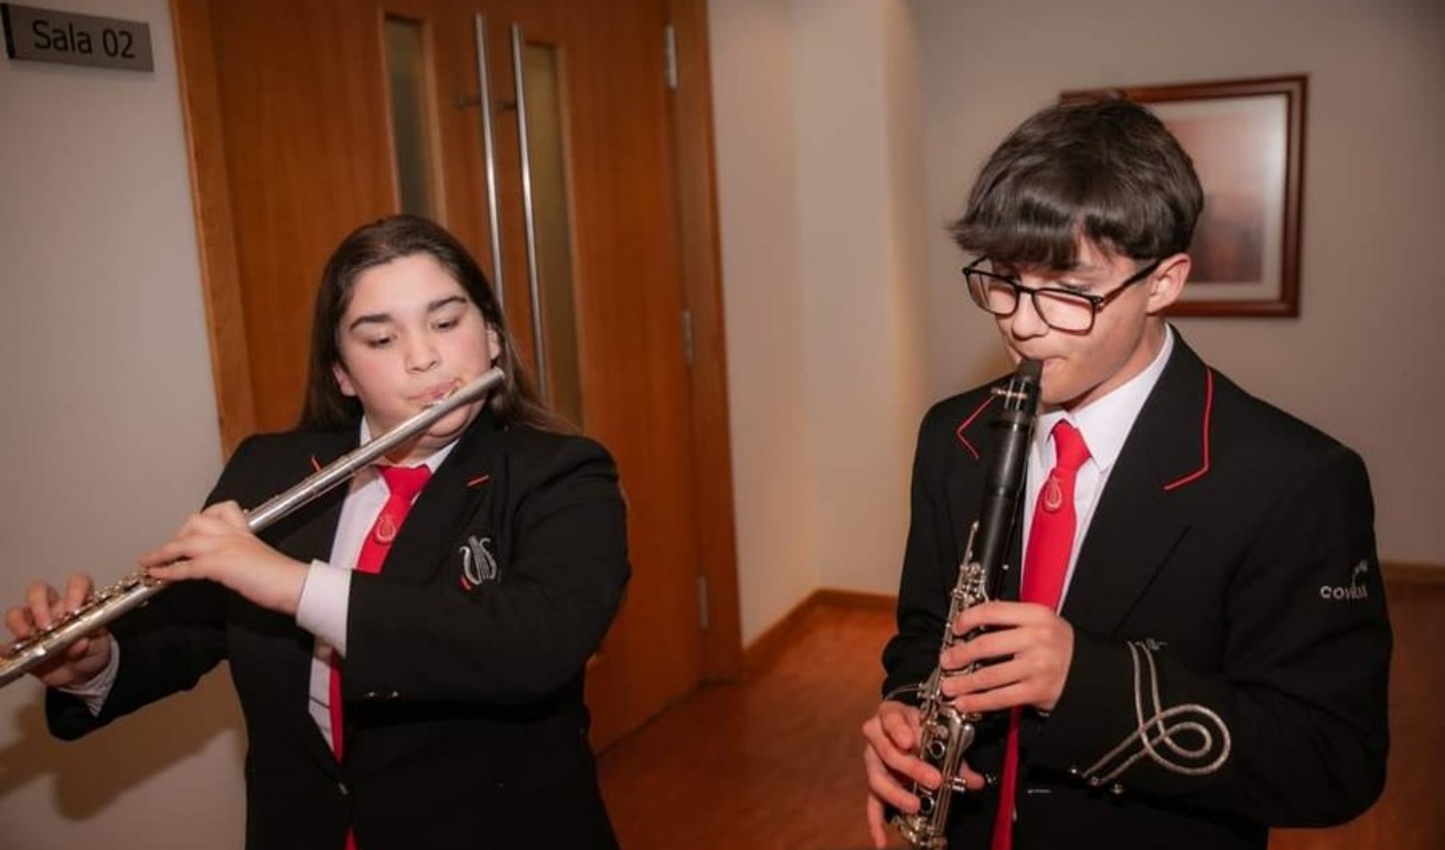 Duo de músicos da Banda da Covilhã presente no Jantar de Ano Novo da Santa Casa da Misericórdia